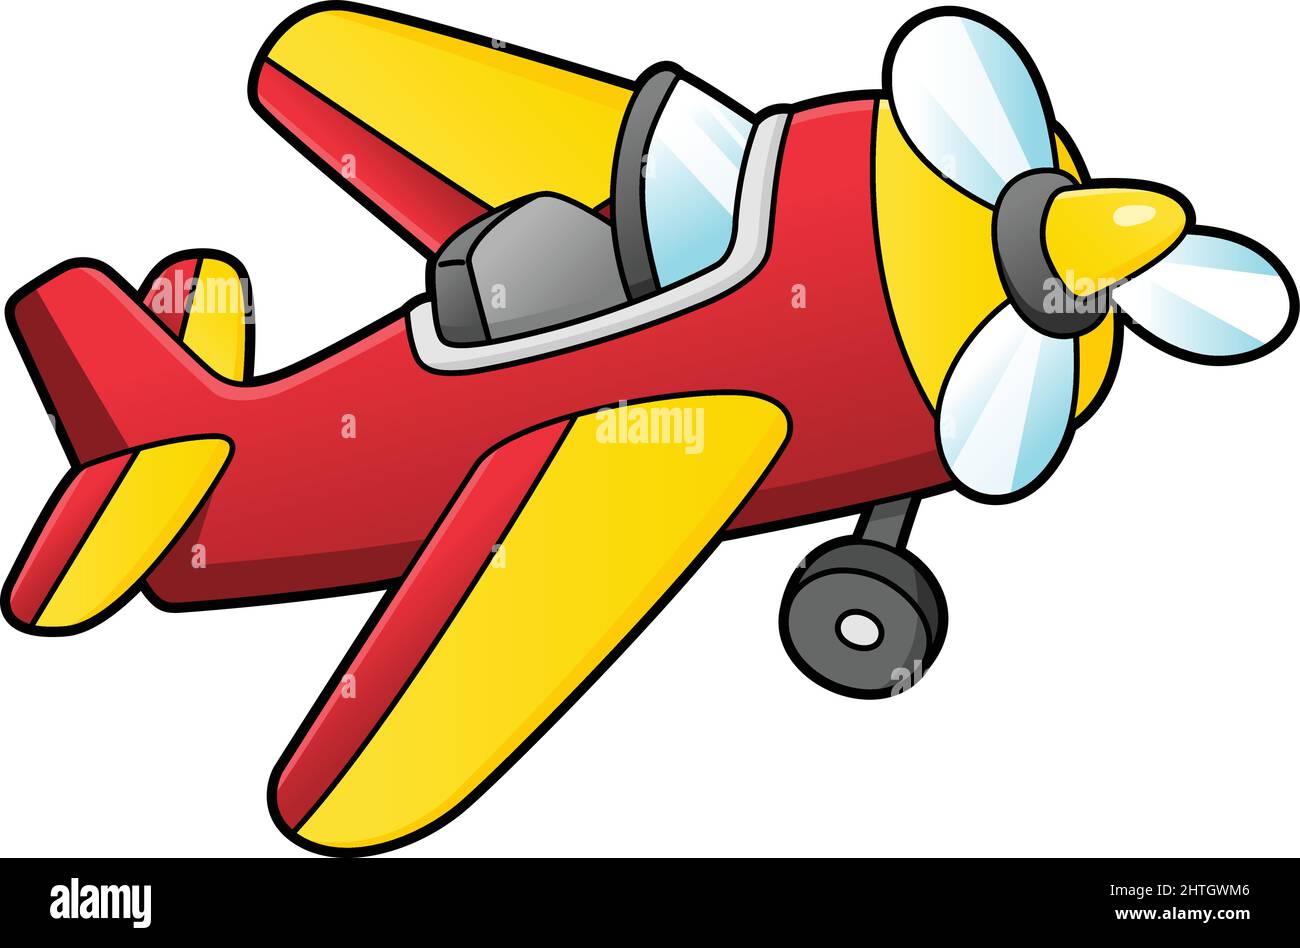 Illustrazione della Clipart del Cartoon Plane Propeller Illustrazione Vettoriale